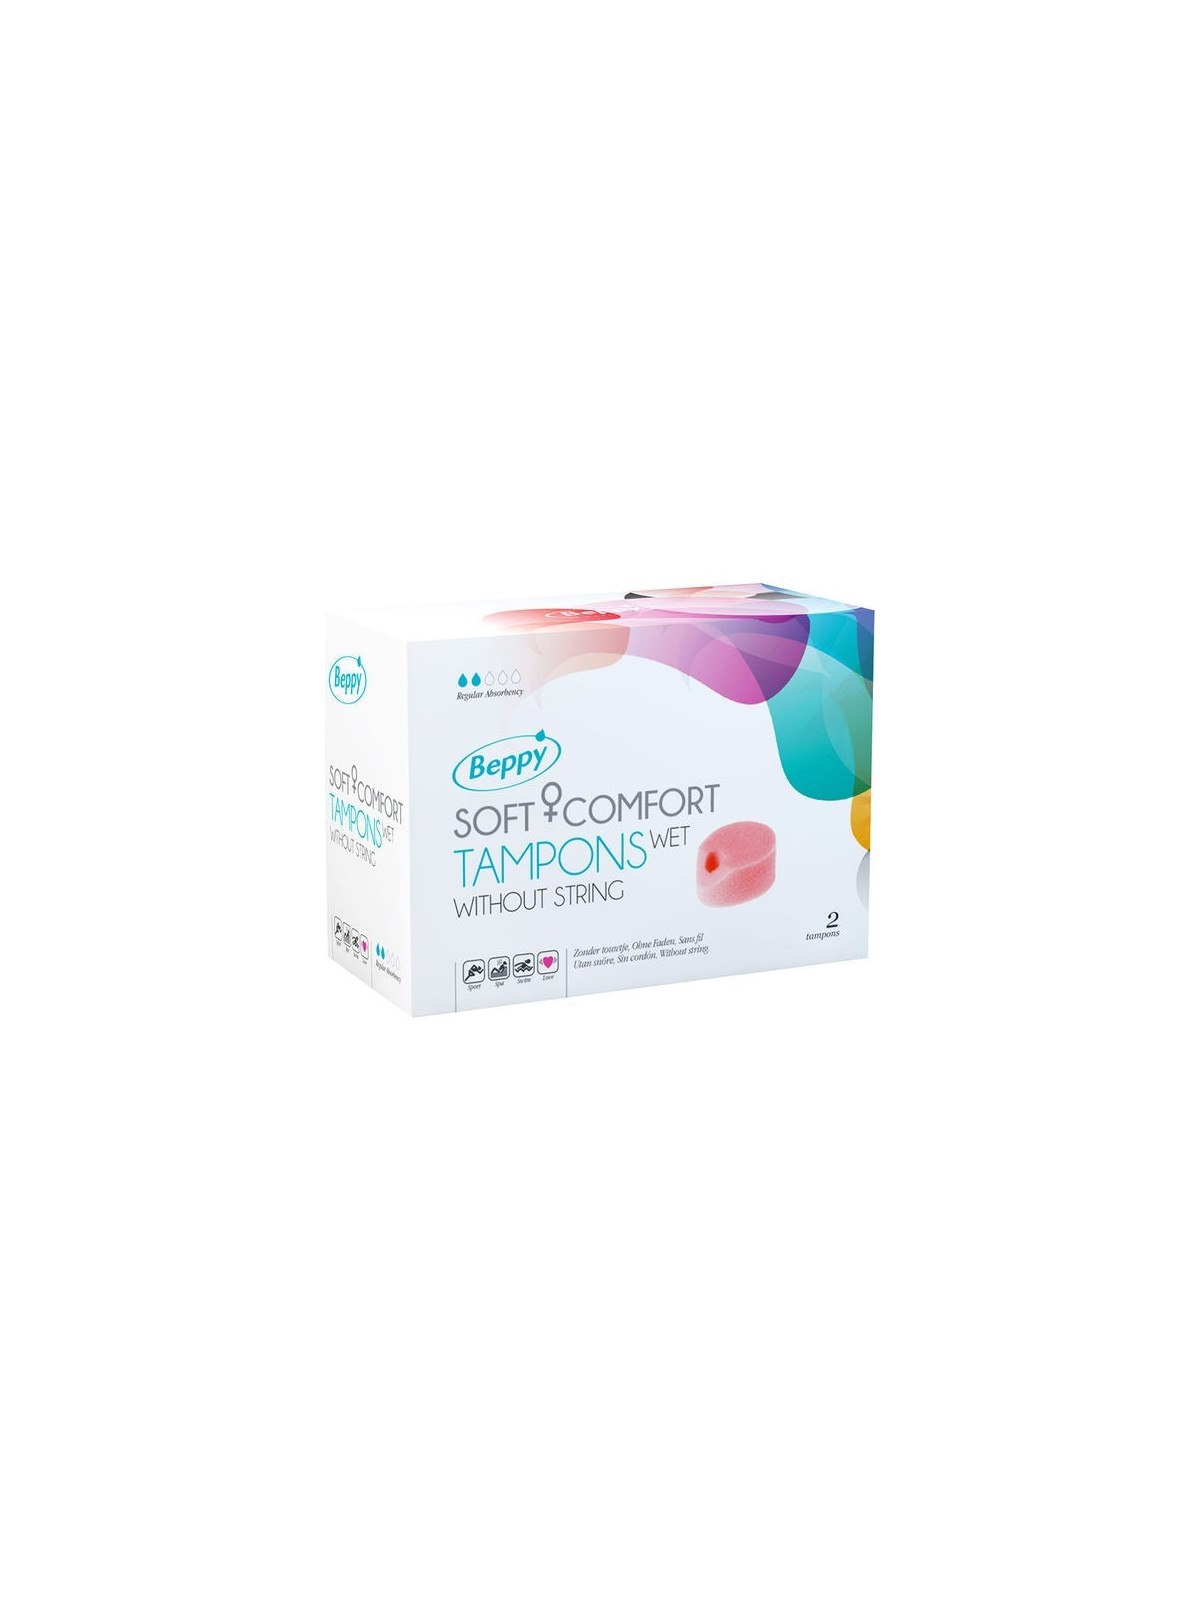 Beppy Tampones Lubricados - Comprar Menstruación Beppy - Tampones & copas menstruales (1)